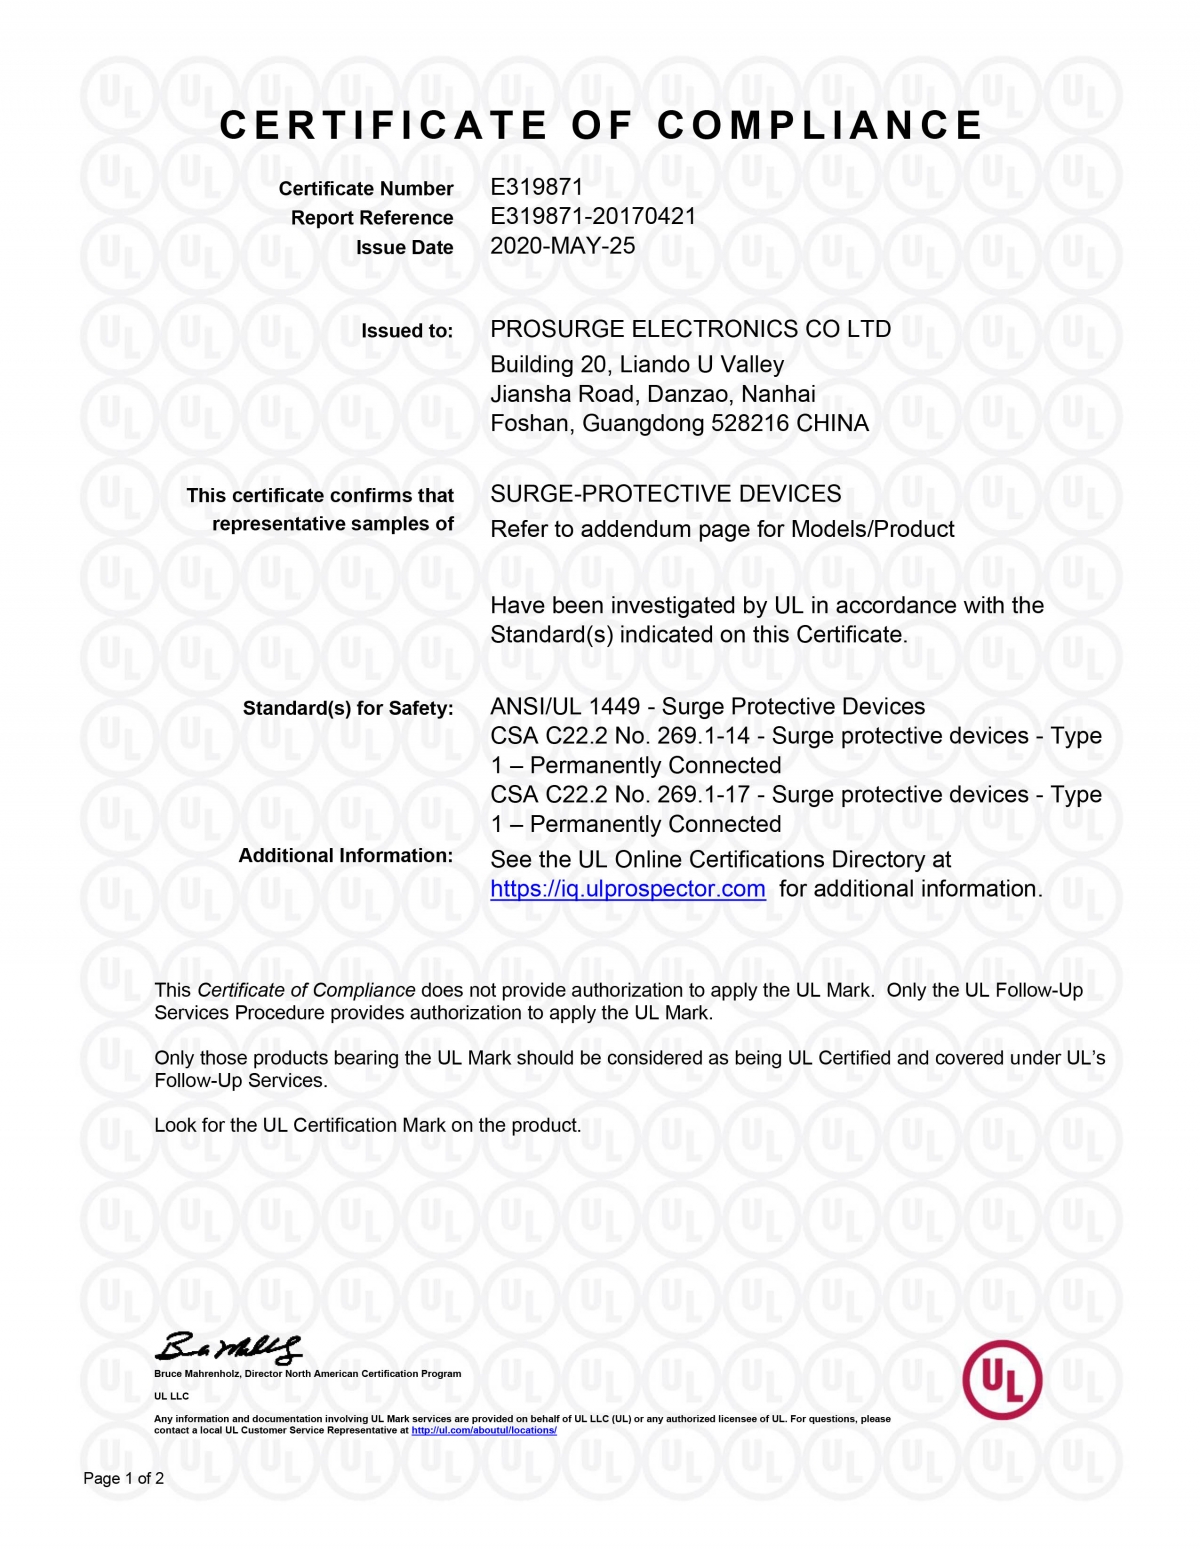 ProSurge UL сертификат для защиты от перенапряжения Devcie